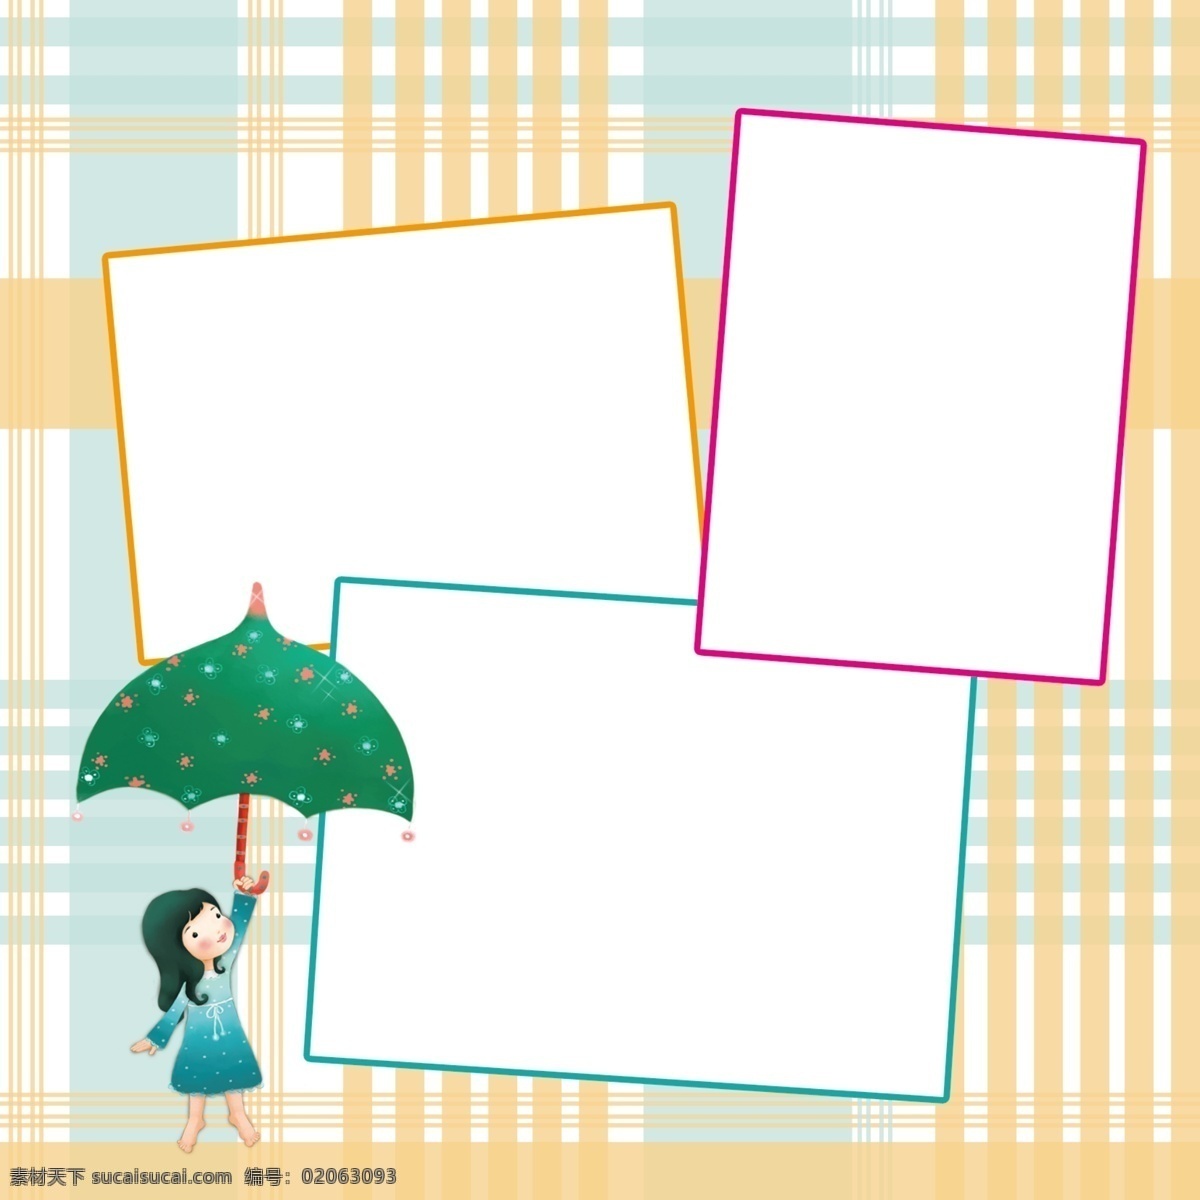 可爱 儿童 相框 相册 儿童相框 卡通 小伞 女孩 边框 简洁相框 相框模板 摄影模板 源文件 儿童摄影模板